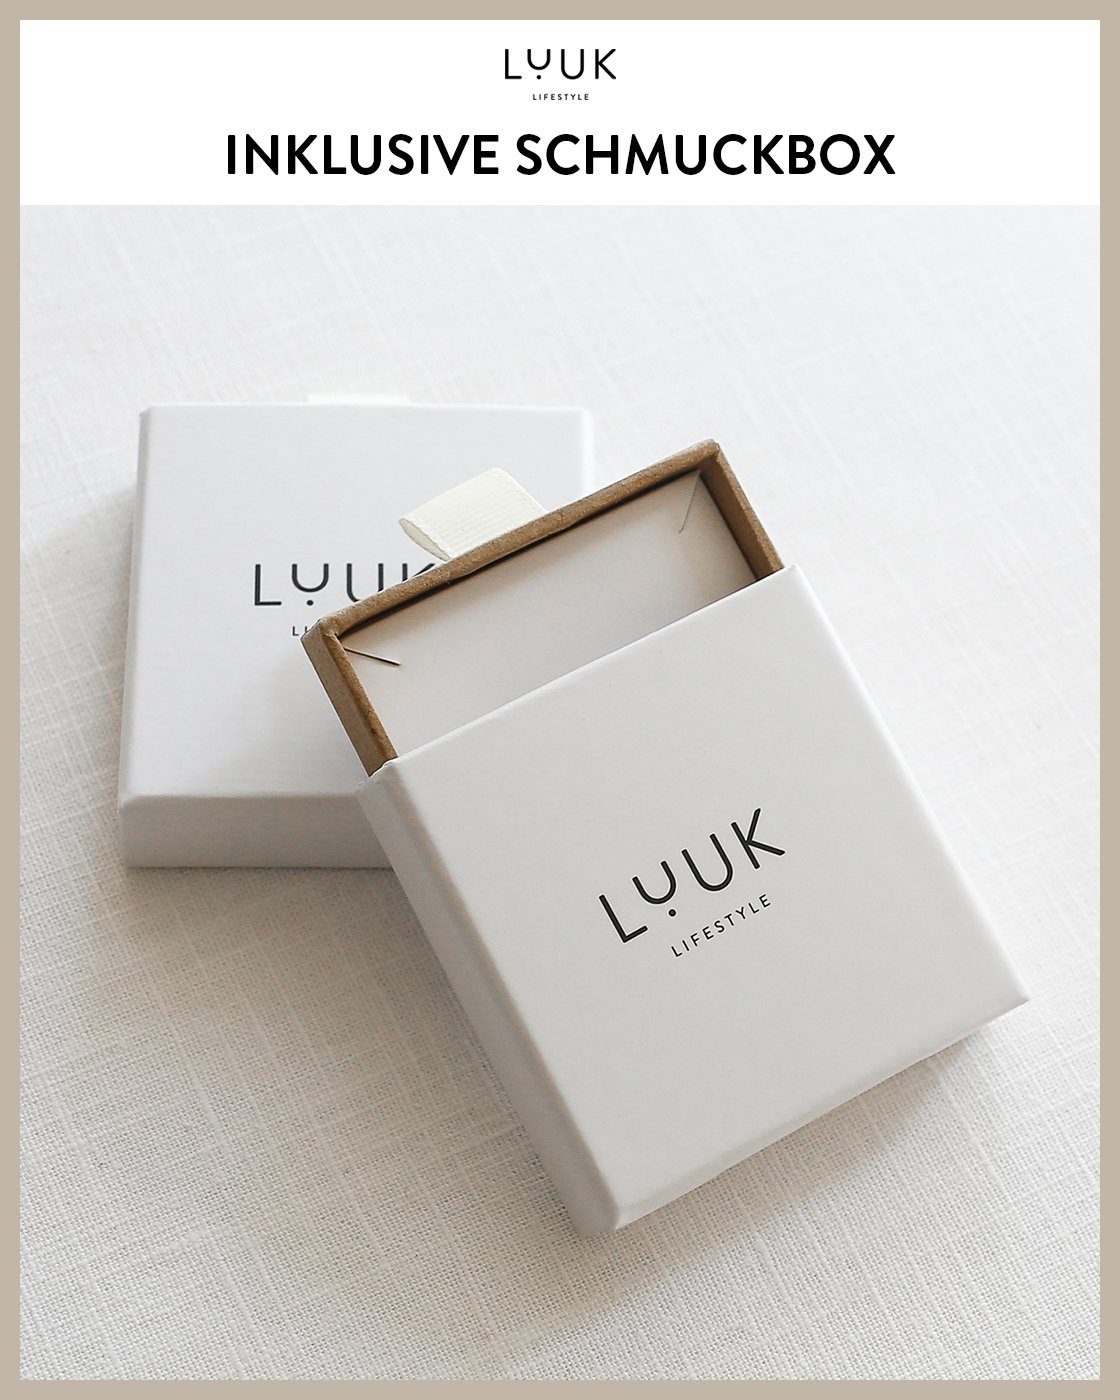 alltagstauglich, hautverträglich, Rosé LUUK schöner modernes Design, Ohrstecker & Ring, Schmuckbox wasserfest inklusive LIFESTYLE Paar